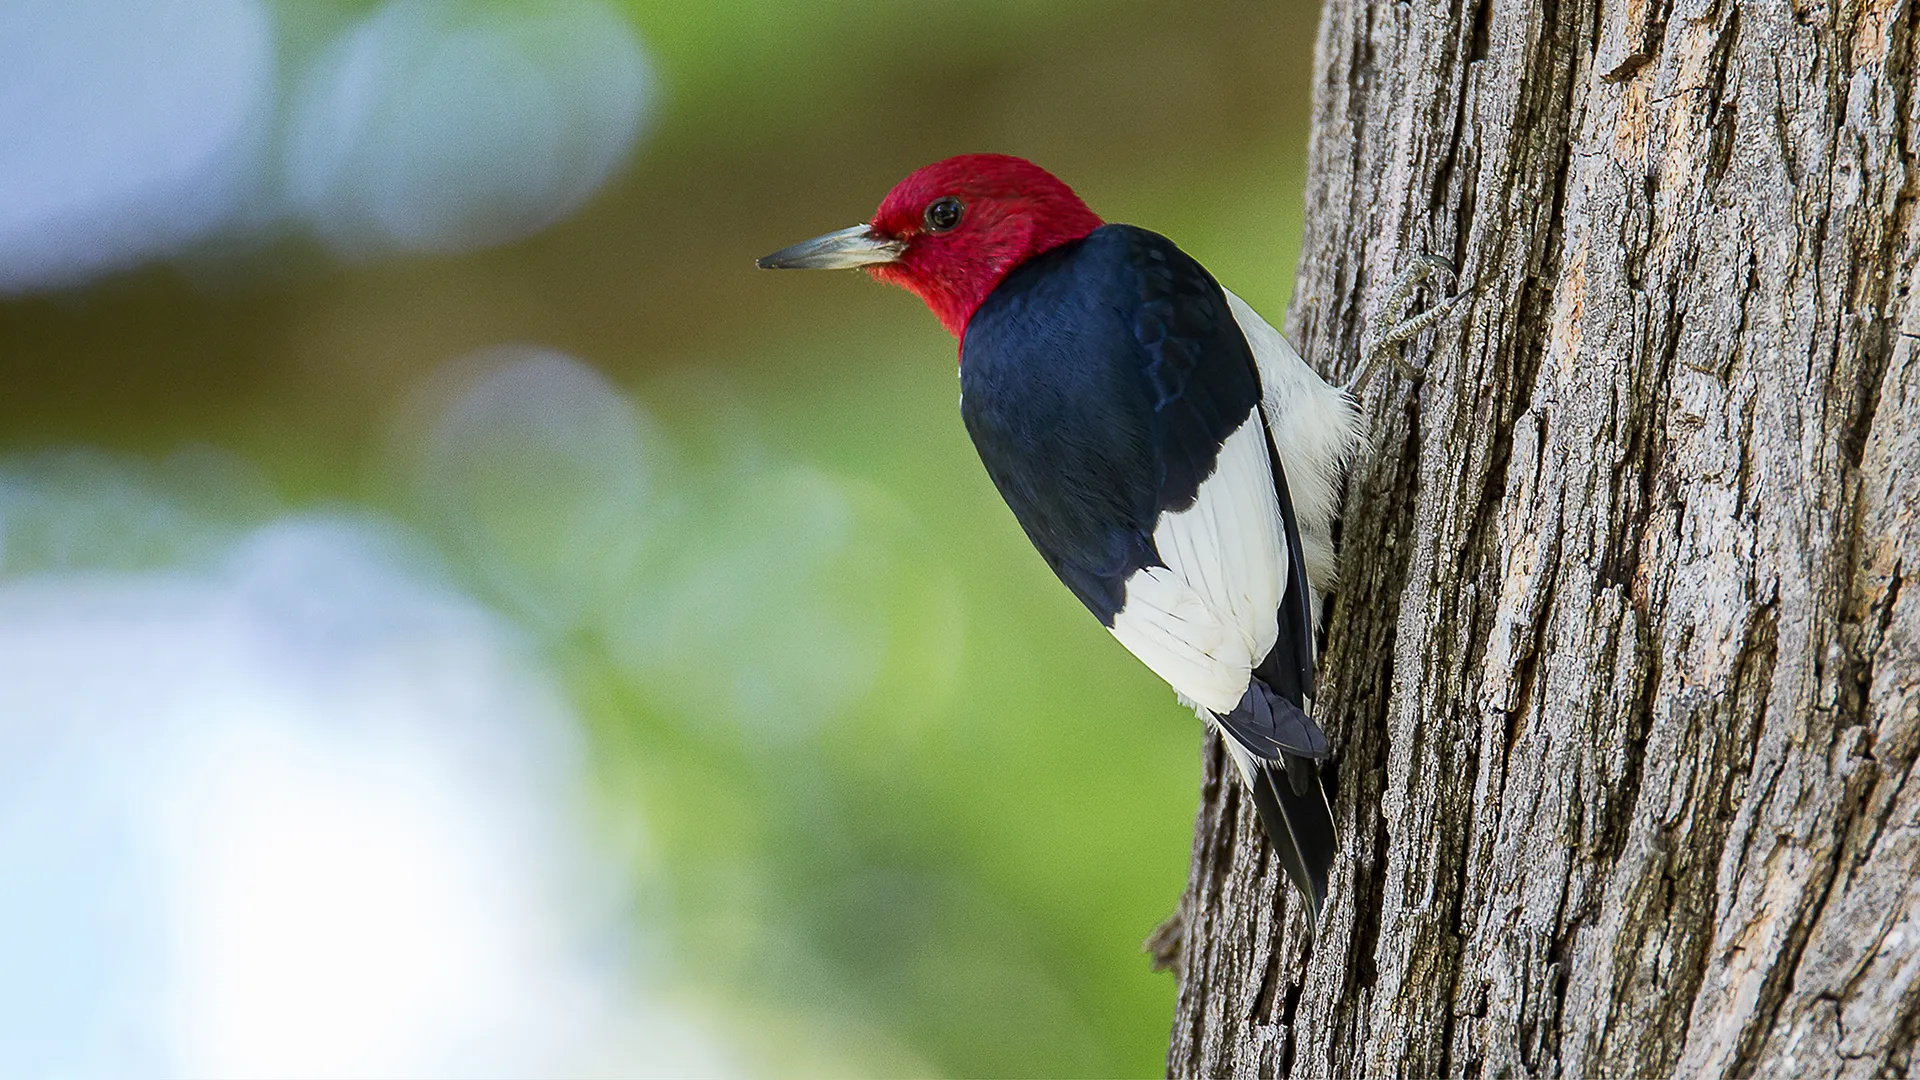 Species spotlight, Red headed woodpecker, Avian beauty, Nature's wonder, 1920x1080 Full HD Desktop